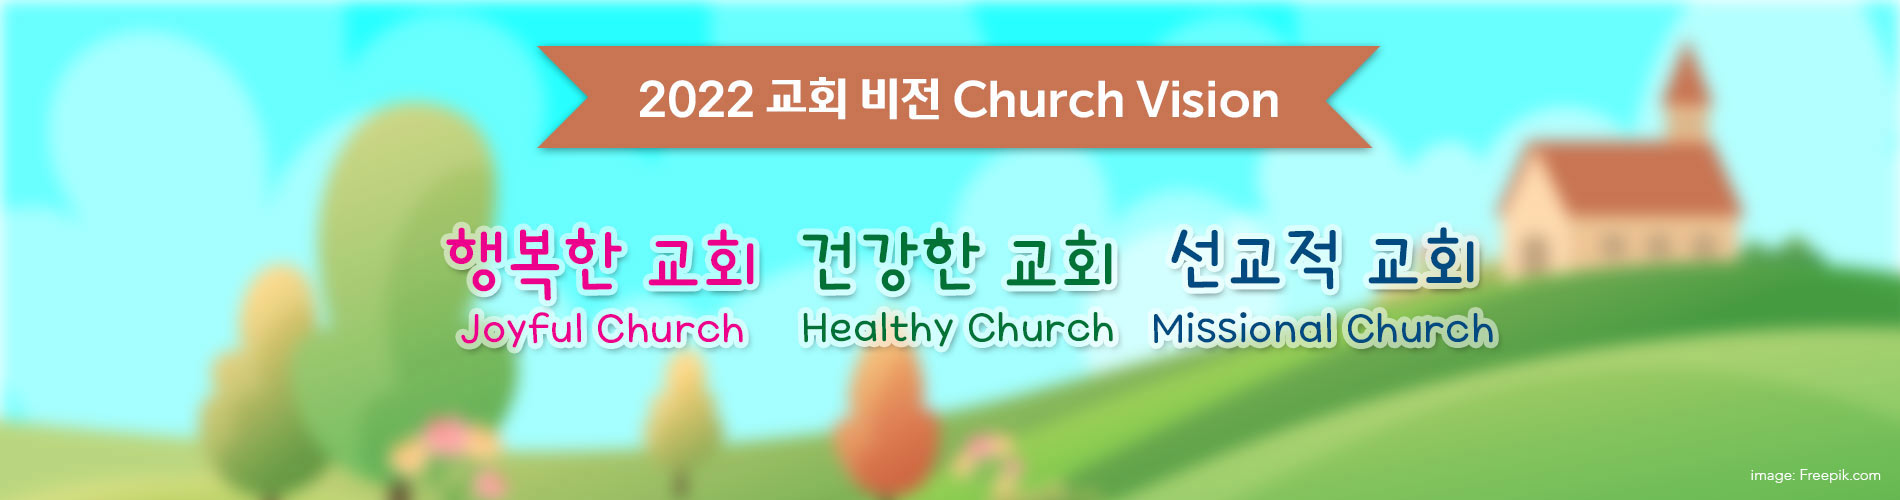 2022 Church Vision